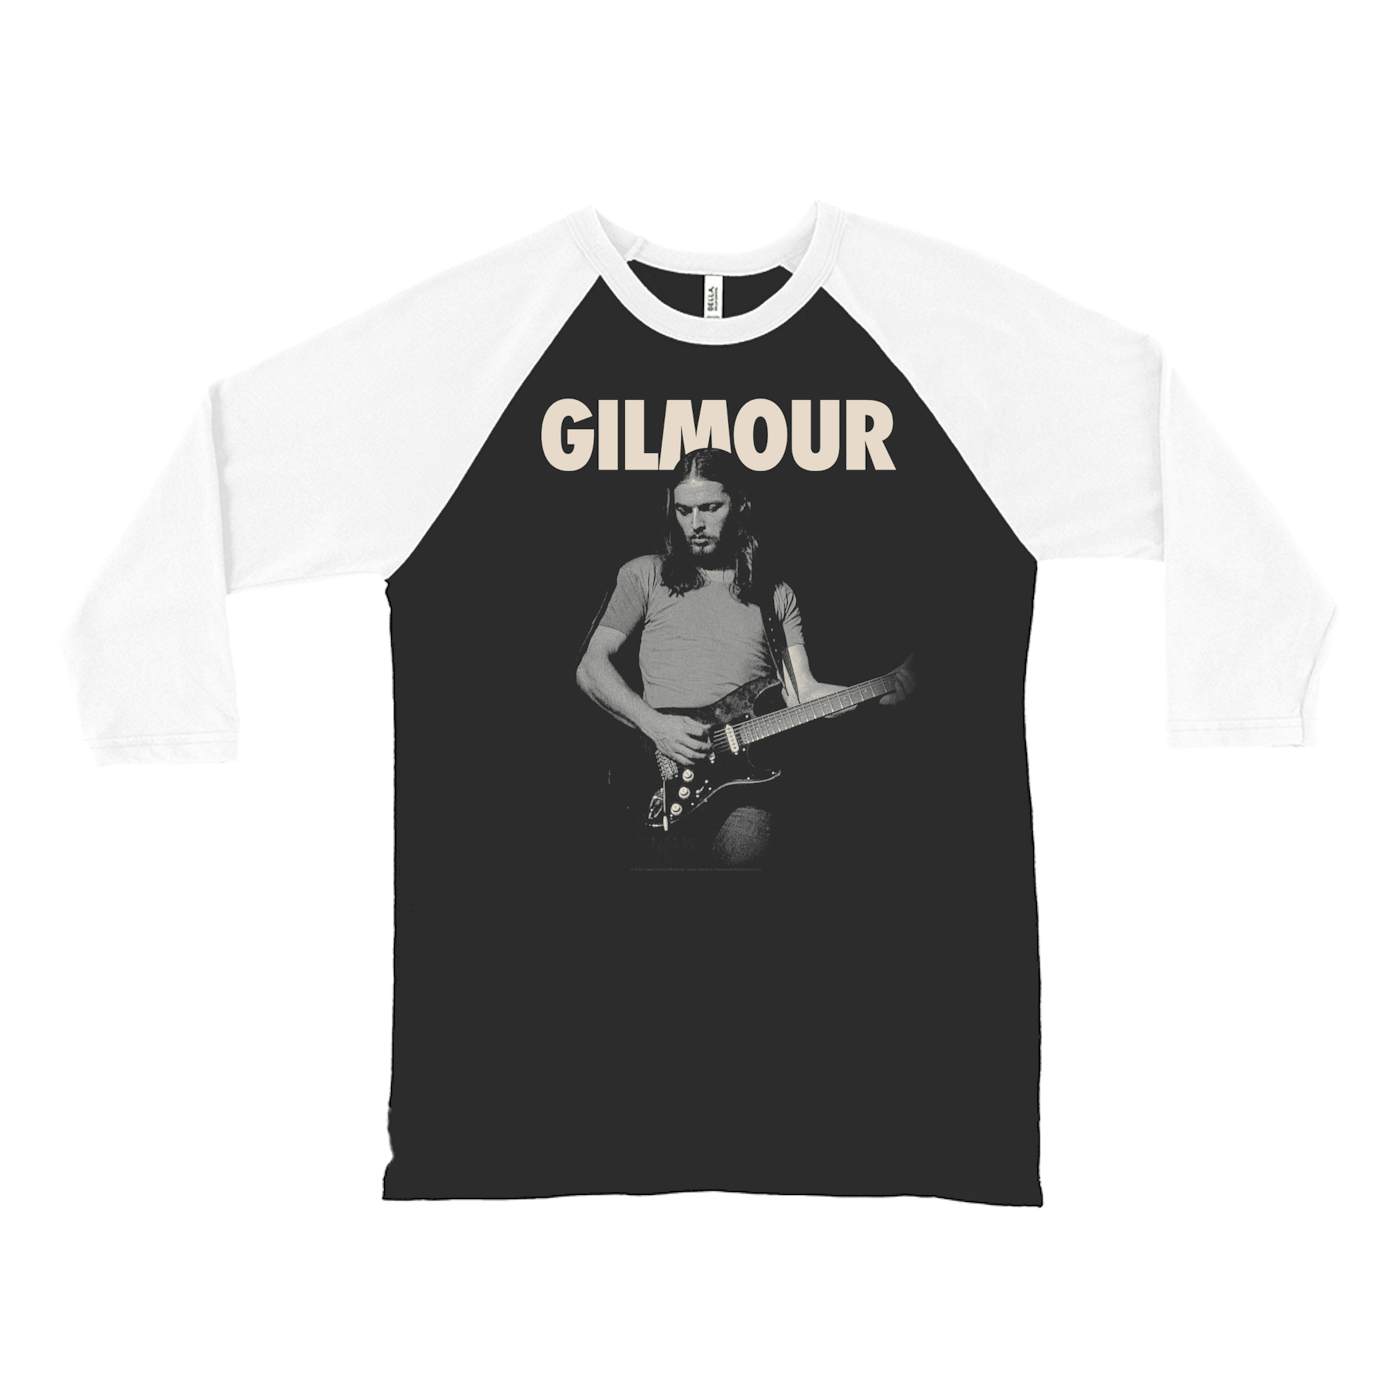 David Gilmour 3/4 Sleeve Baseball Tee | Young David Gilmour an Bold Logo David Gilmour Shirt